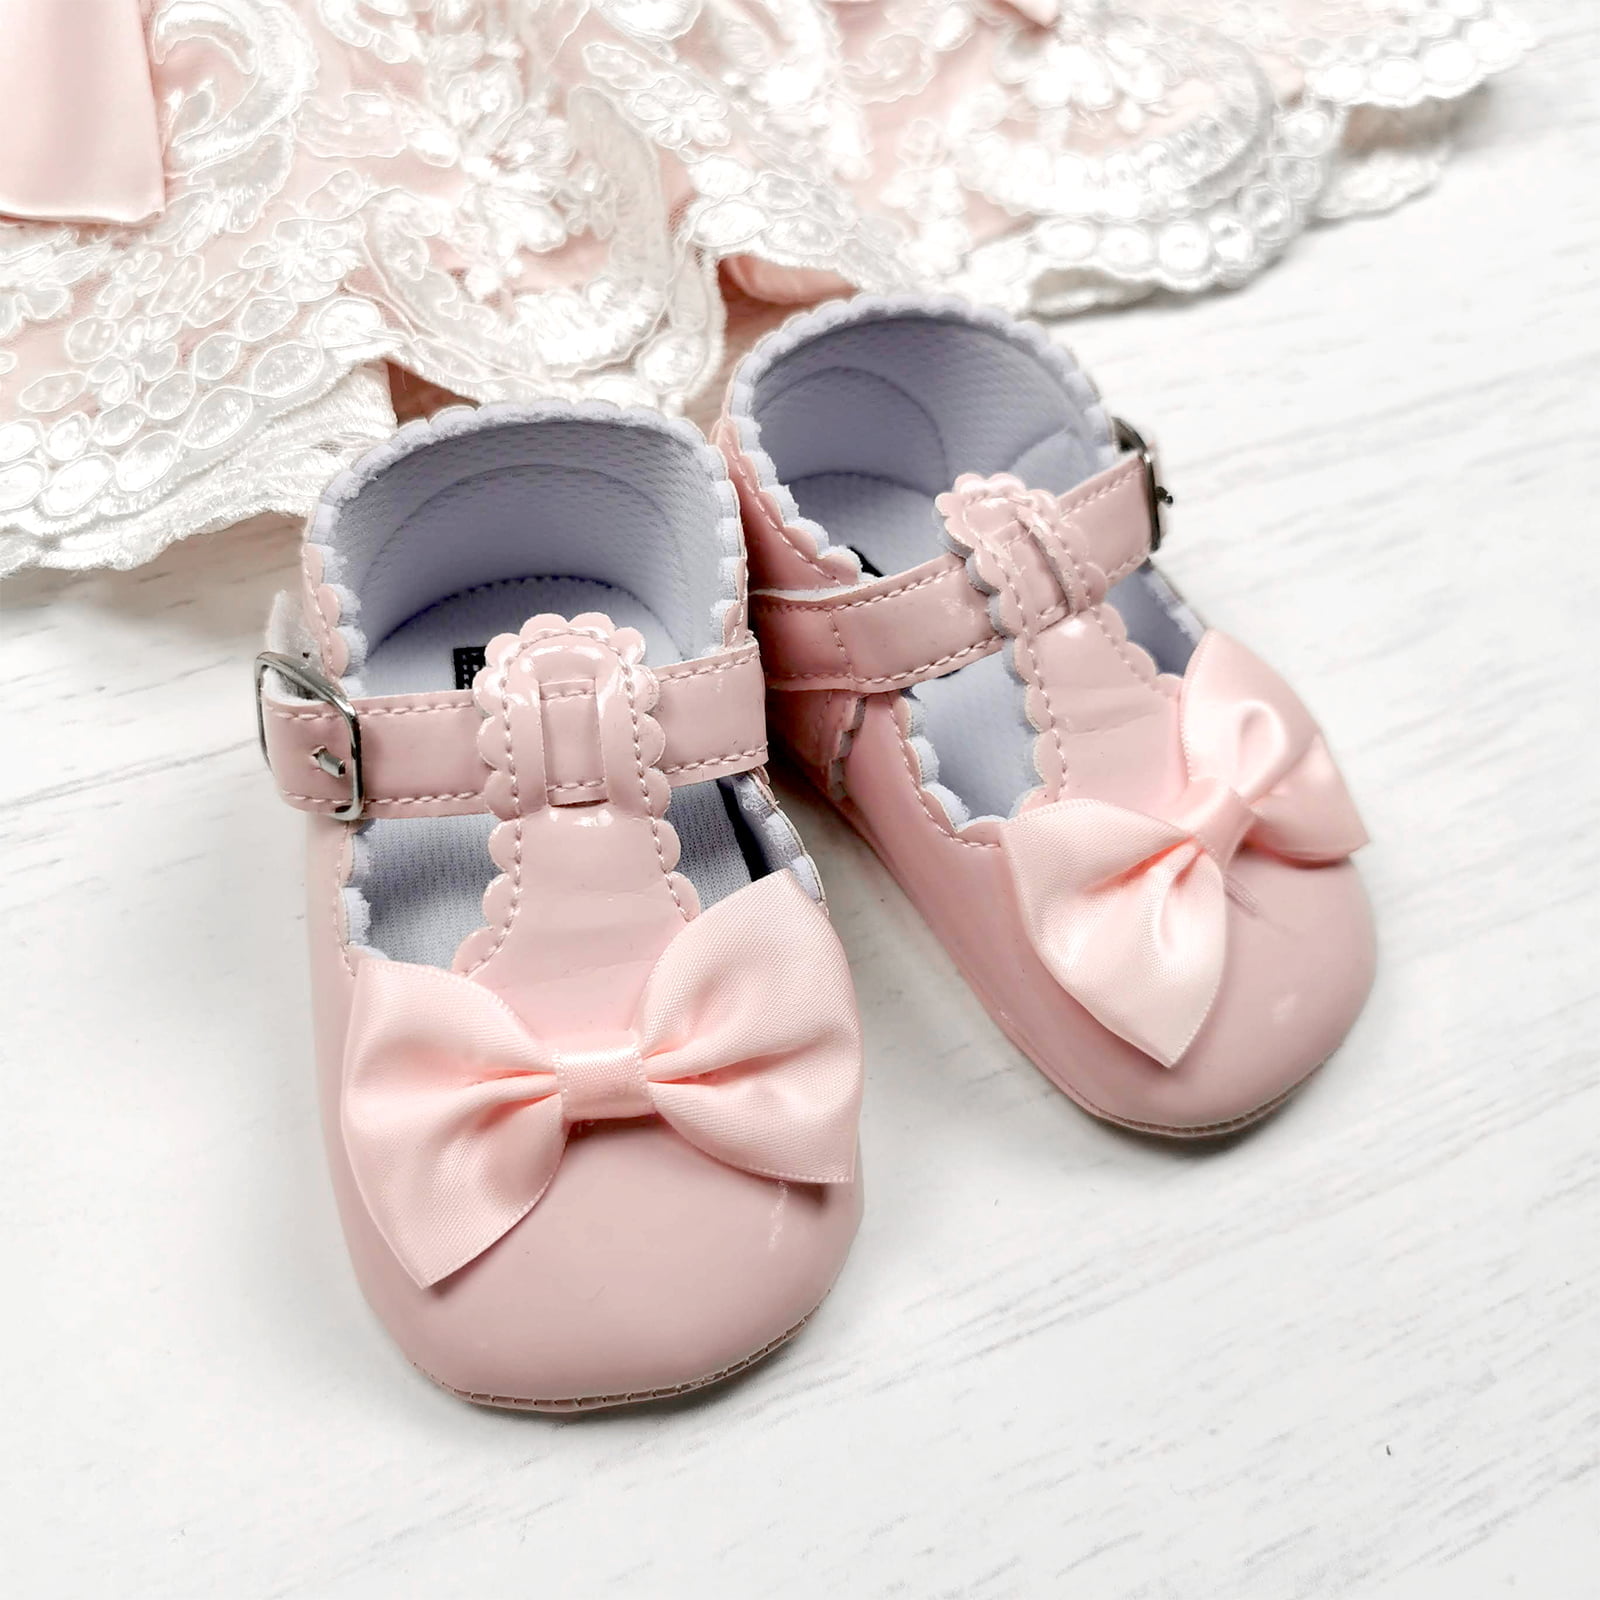 cipelice za bebe u rozoj boji